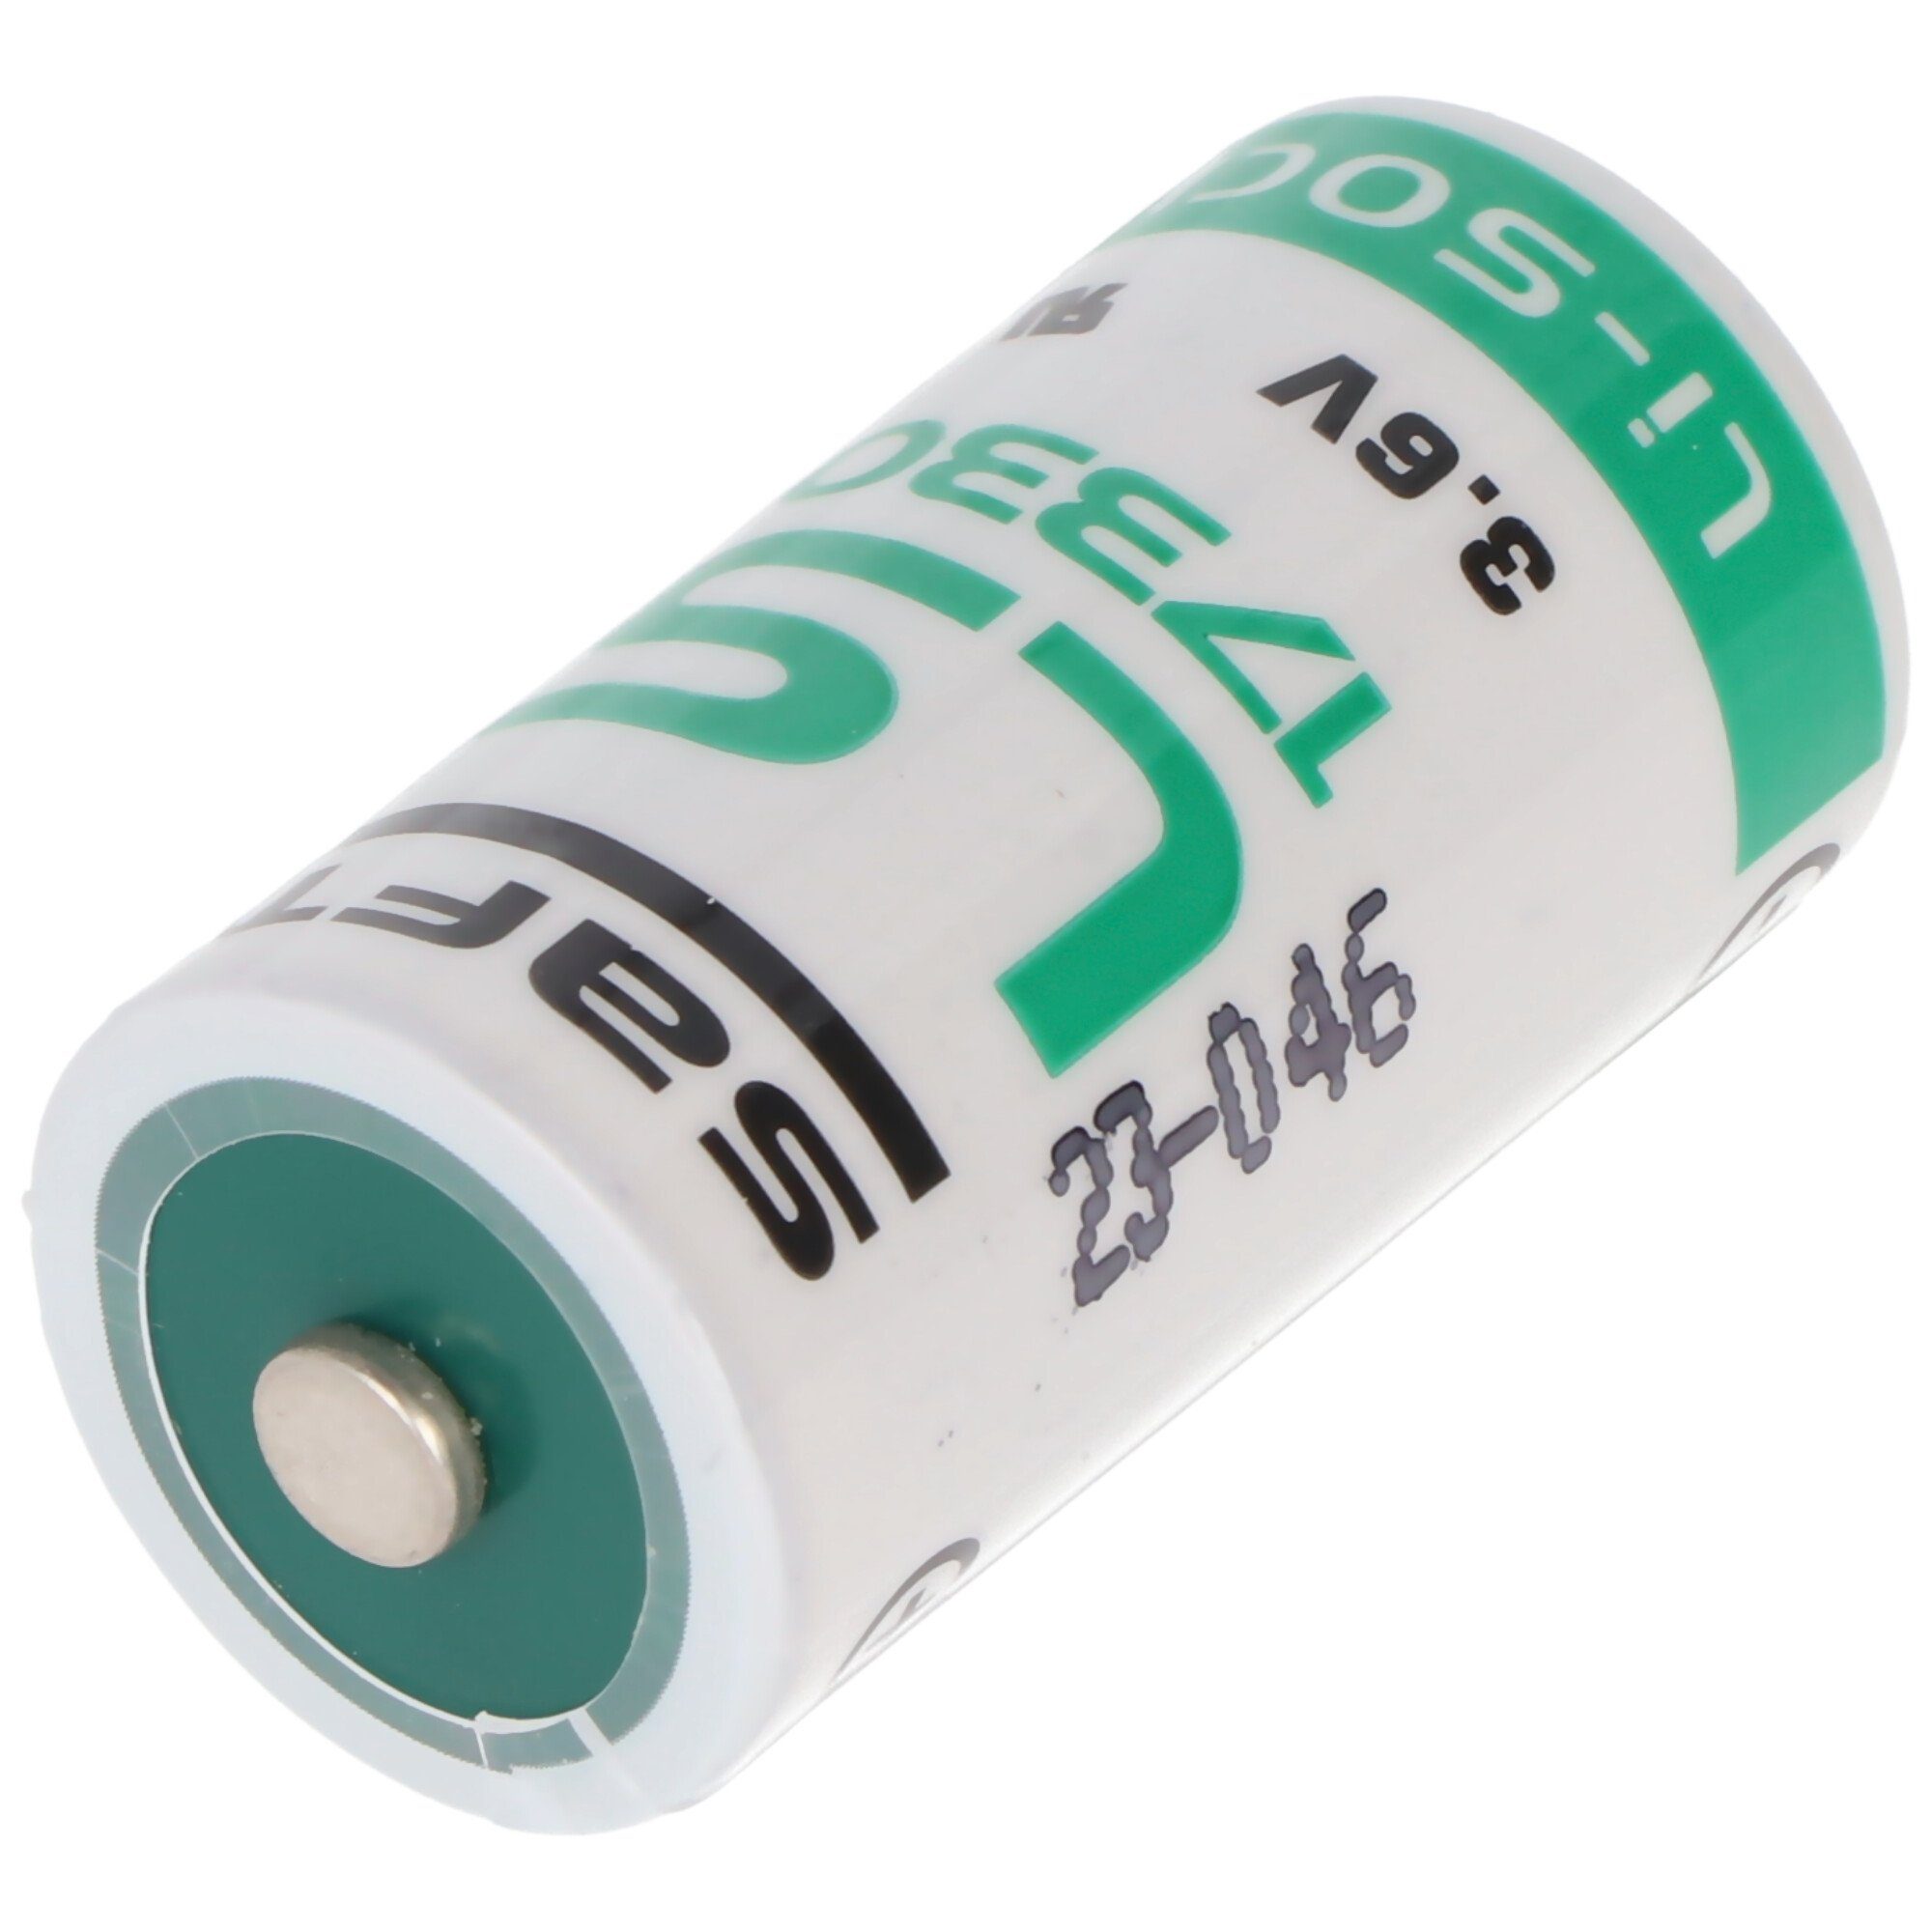 2,1 V) 3,6 (3,6 LS-17330 Batterie, V Ah Saft Lithium Saft